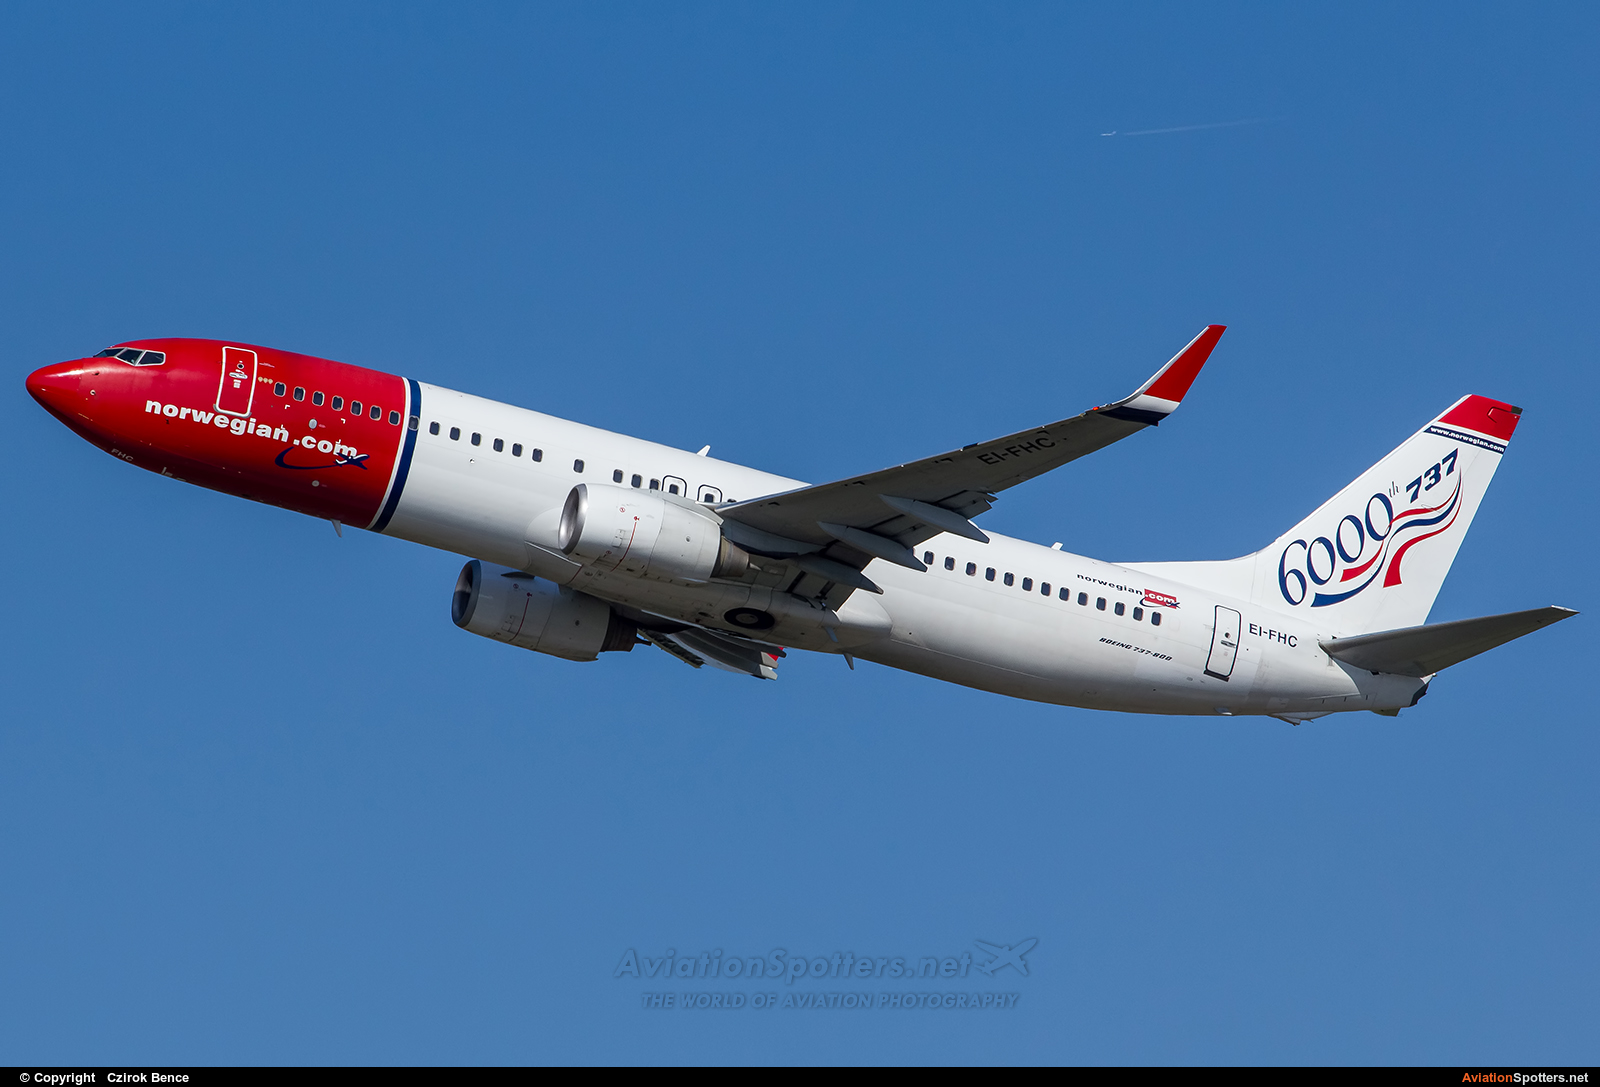 Norwegian Air Shuttle  -  737-800  (EI-FHC) By Czirok Bence (Orosmet)